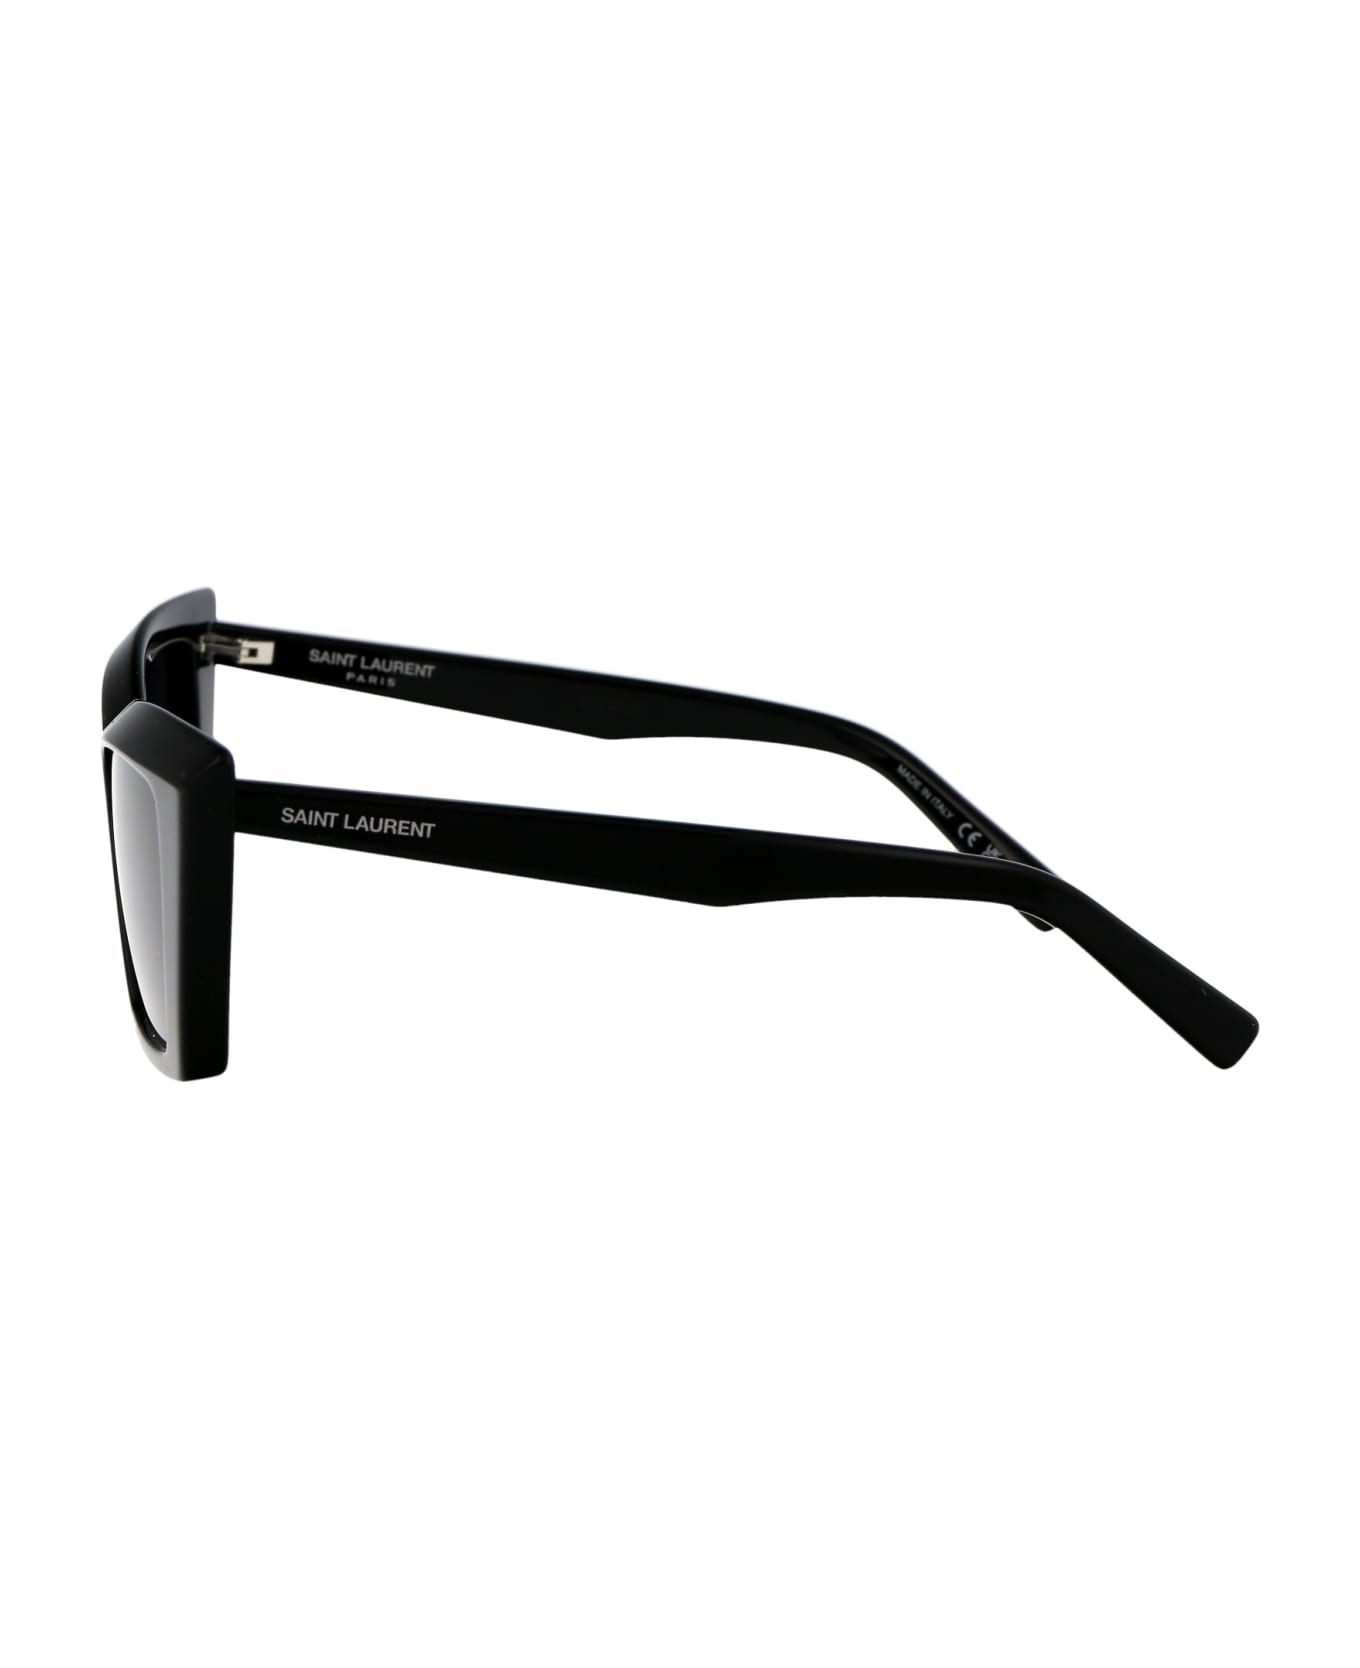 Saint Laurent Eyewear Sl 657 Sunglasses - 001 BLACK BLACK BLACK サングラス